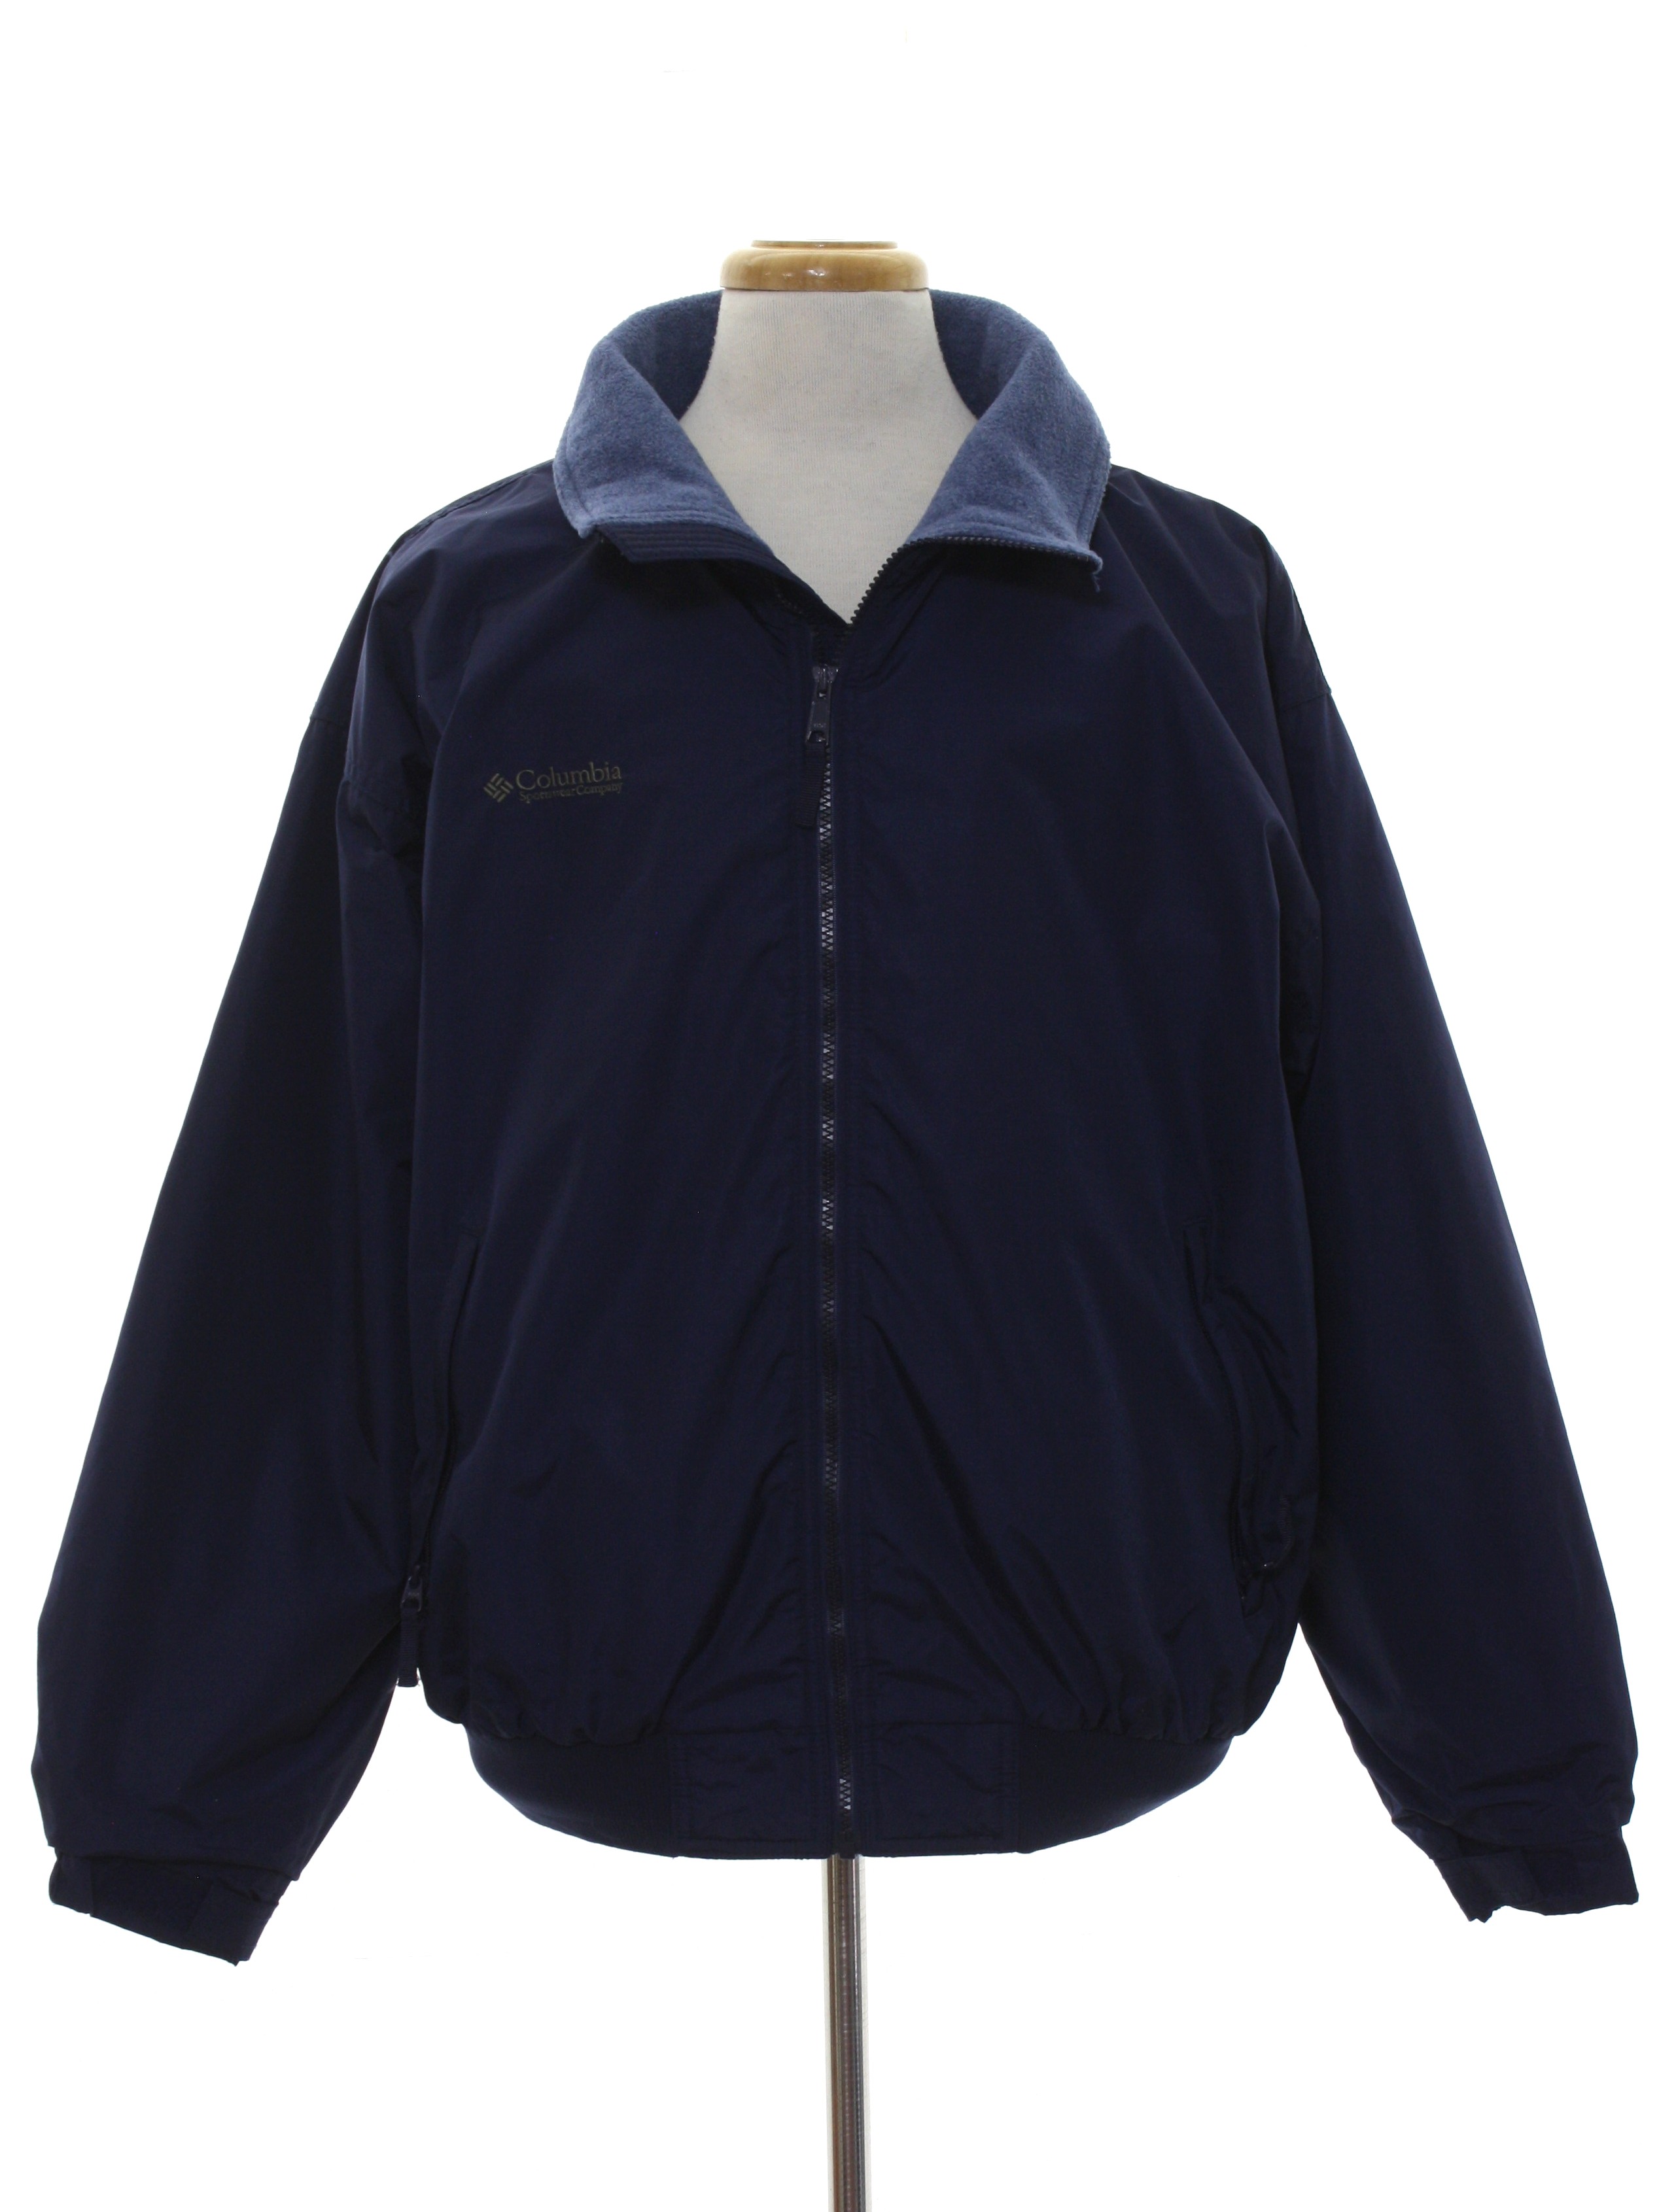 Nineties Vintage Jacket: Late 90s -Columbia- Mens dark blue background ...